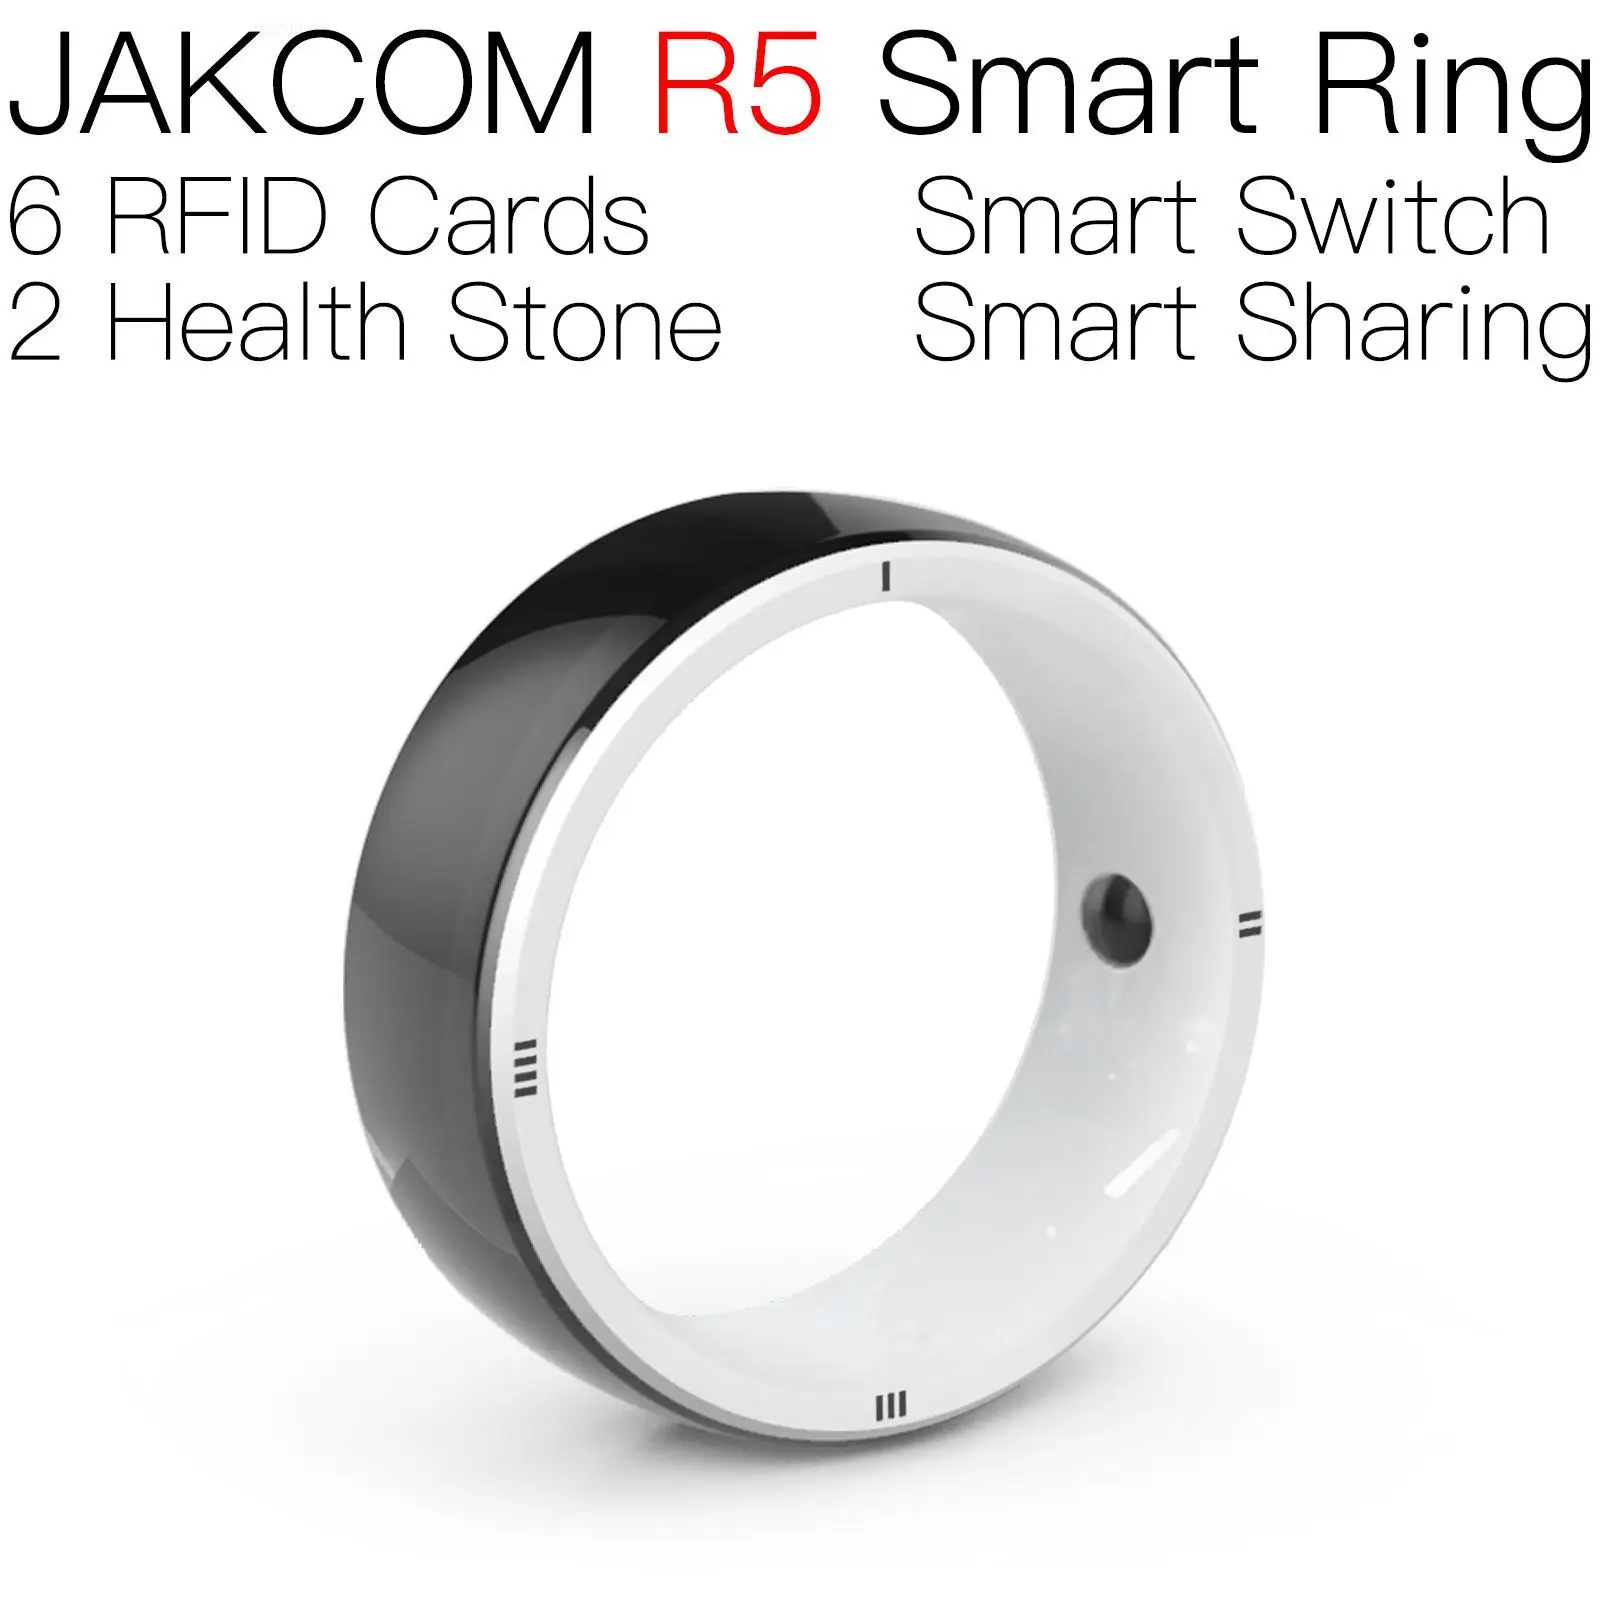 

Умное кольцо JAKCOM R5 лучше, чем rfid-метка pic 16f628a микрочип смарт-кольцо 125 кГц чипы 215 snartwatch x8 макс. карта